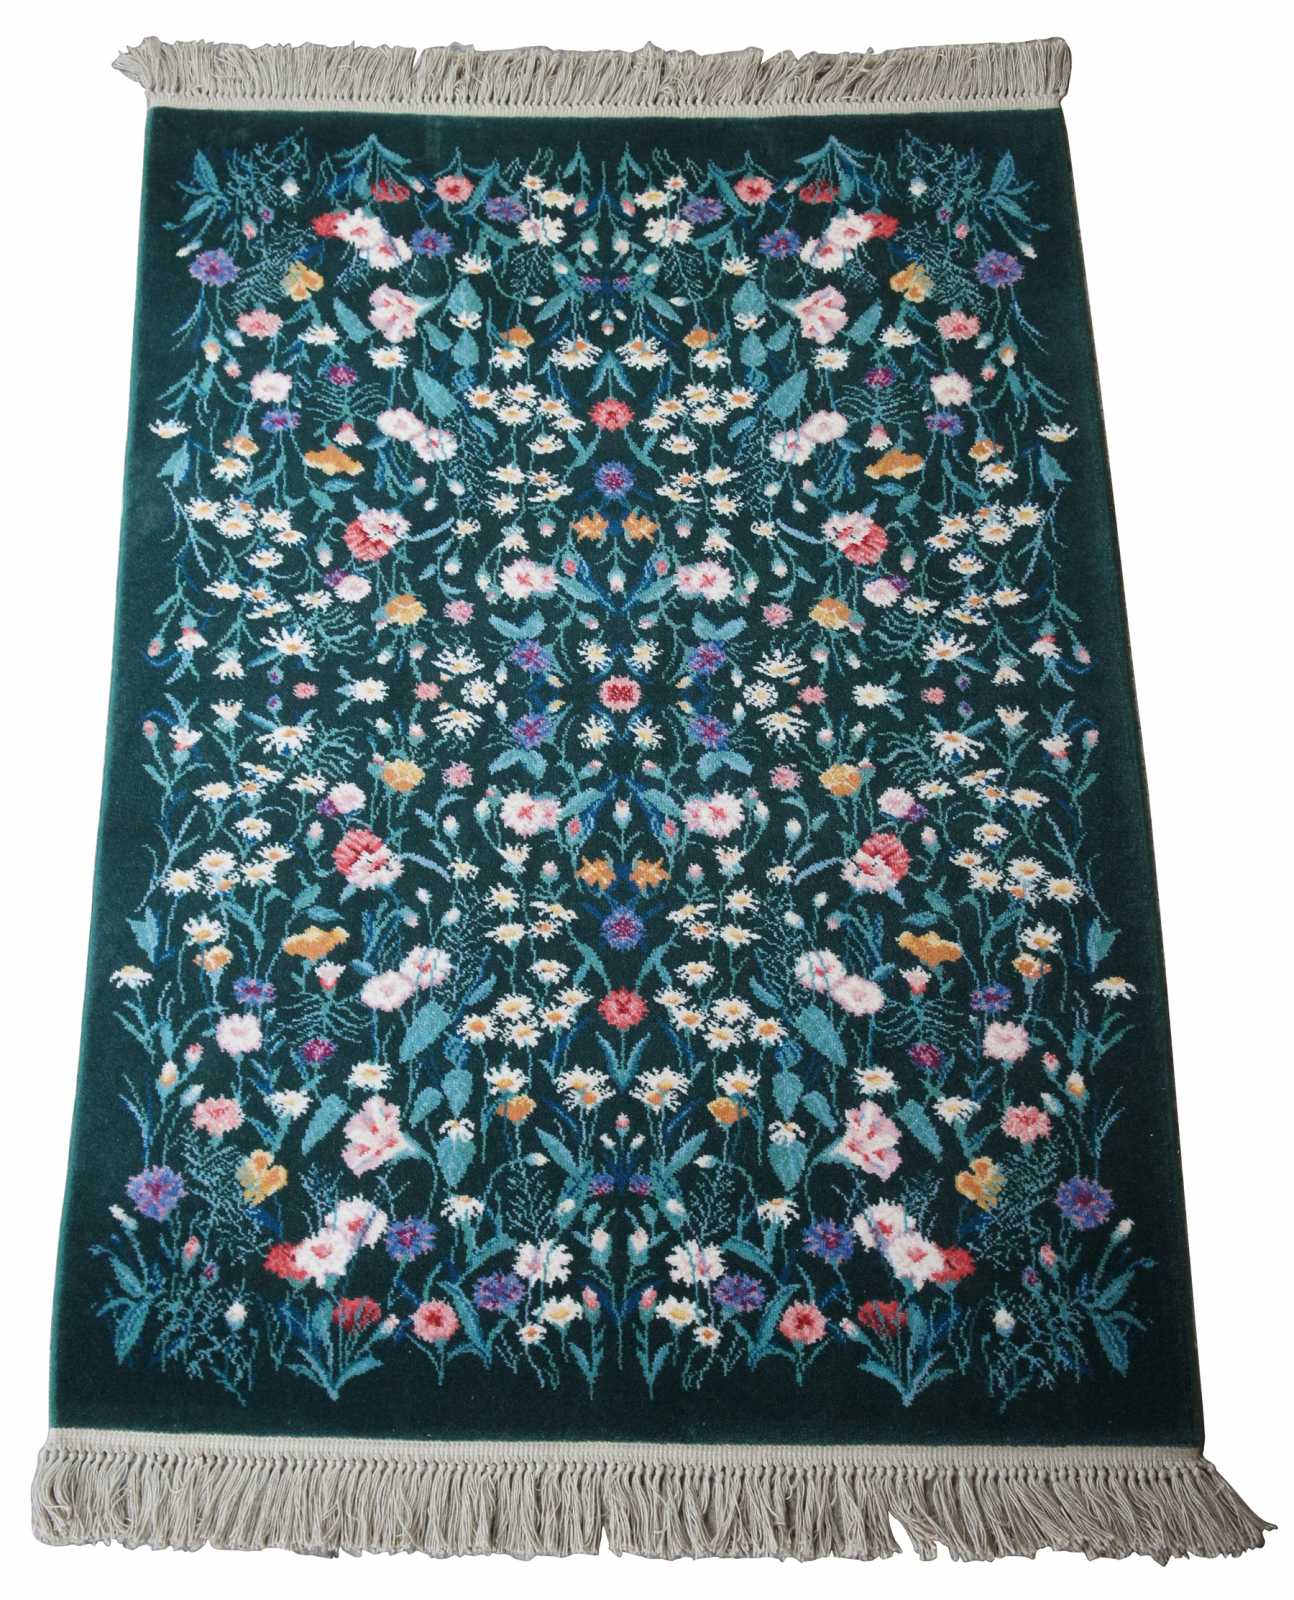 karastan-100-wool-garden-of-eden-wildflowers-area-rug-carpet-509-9751